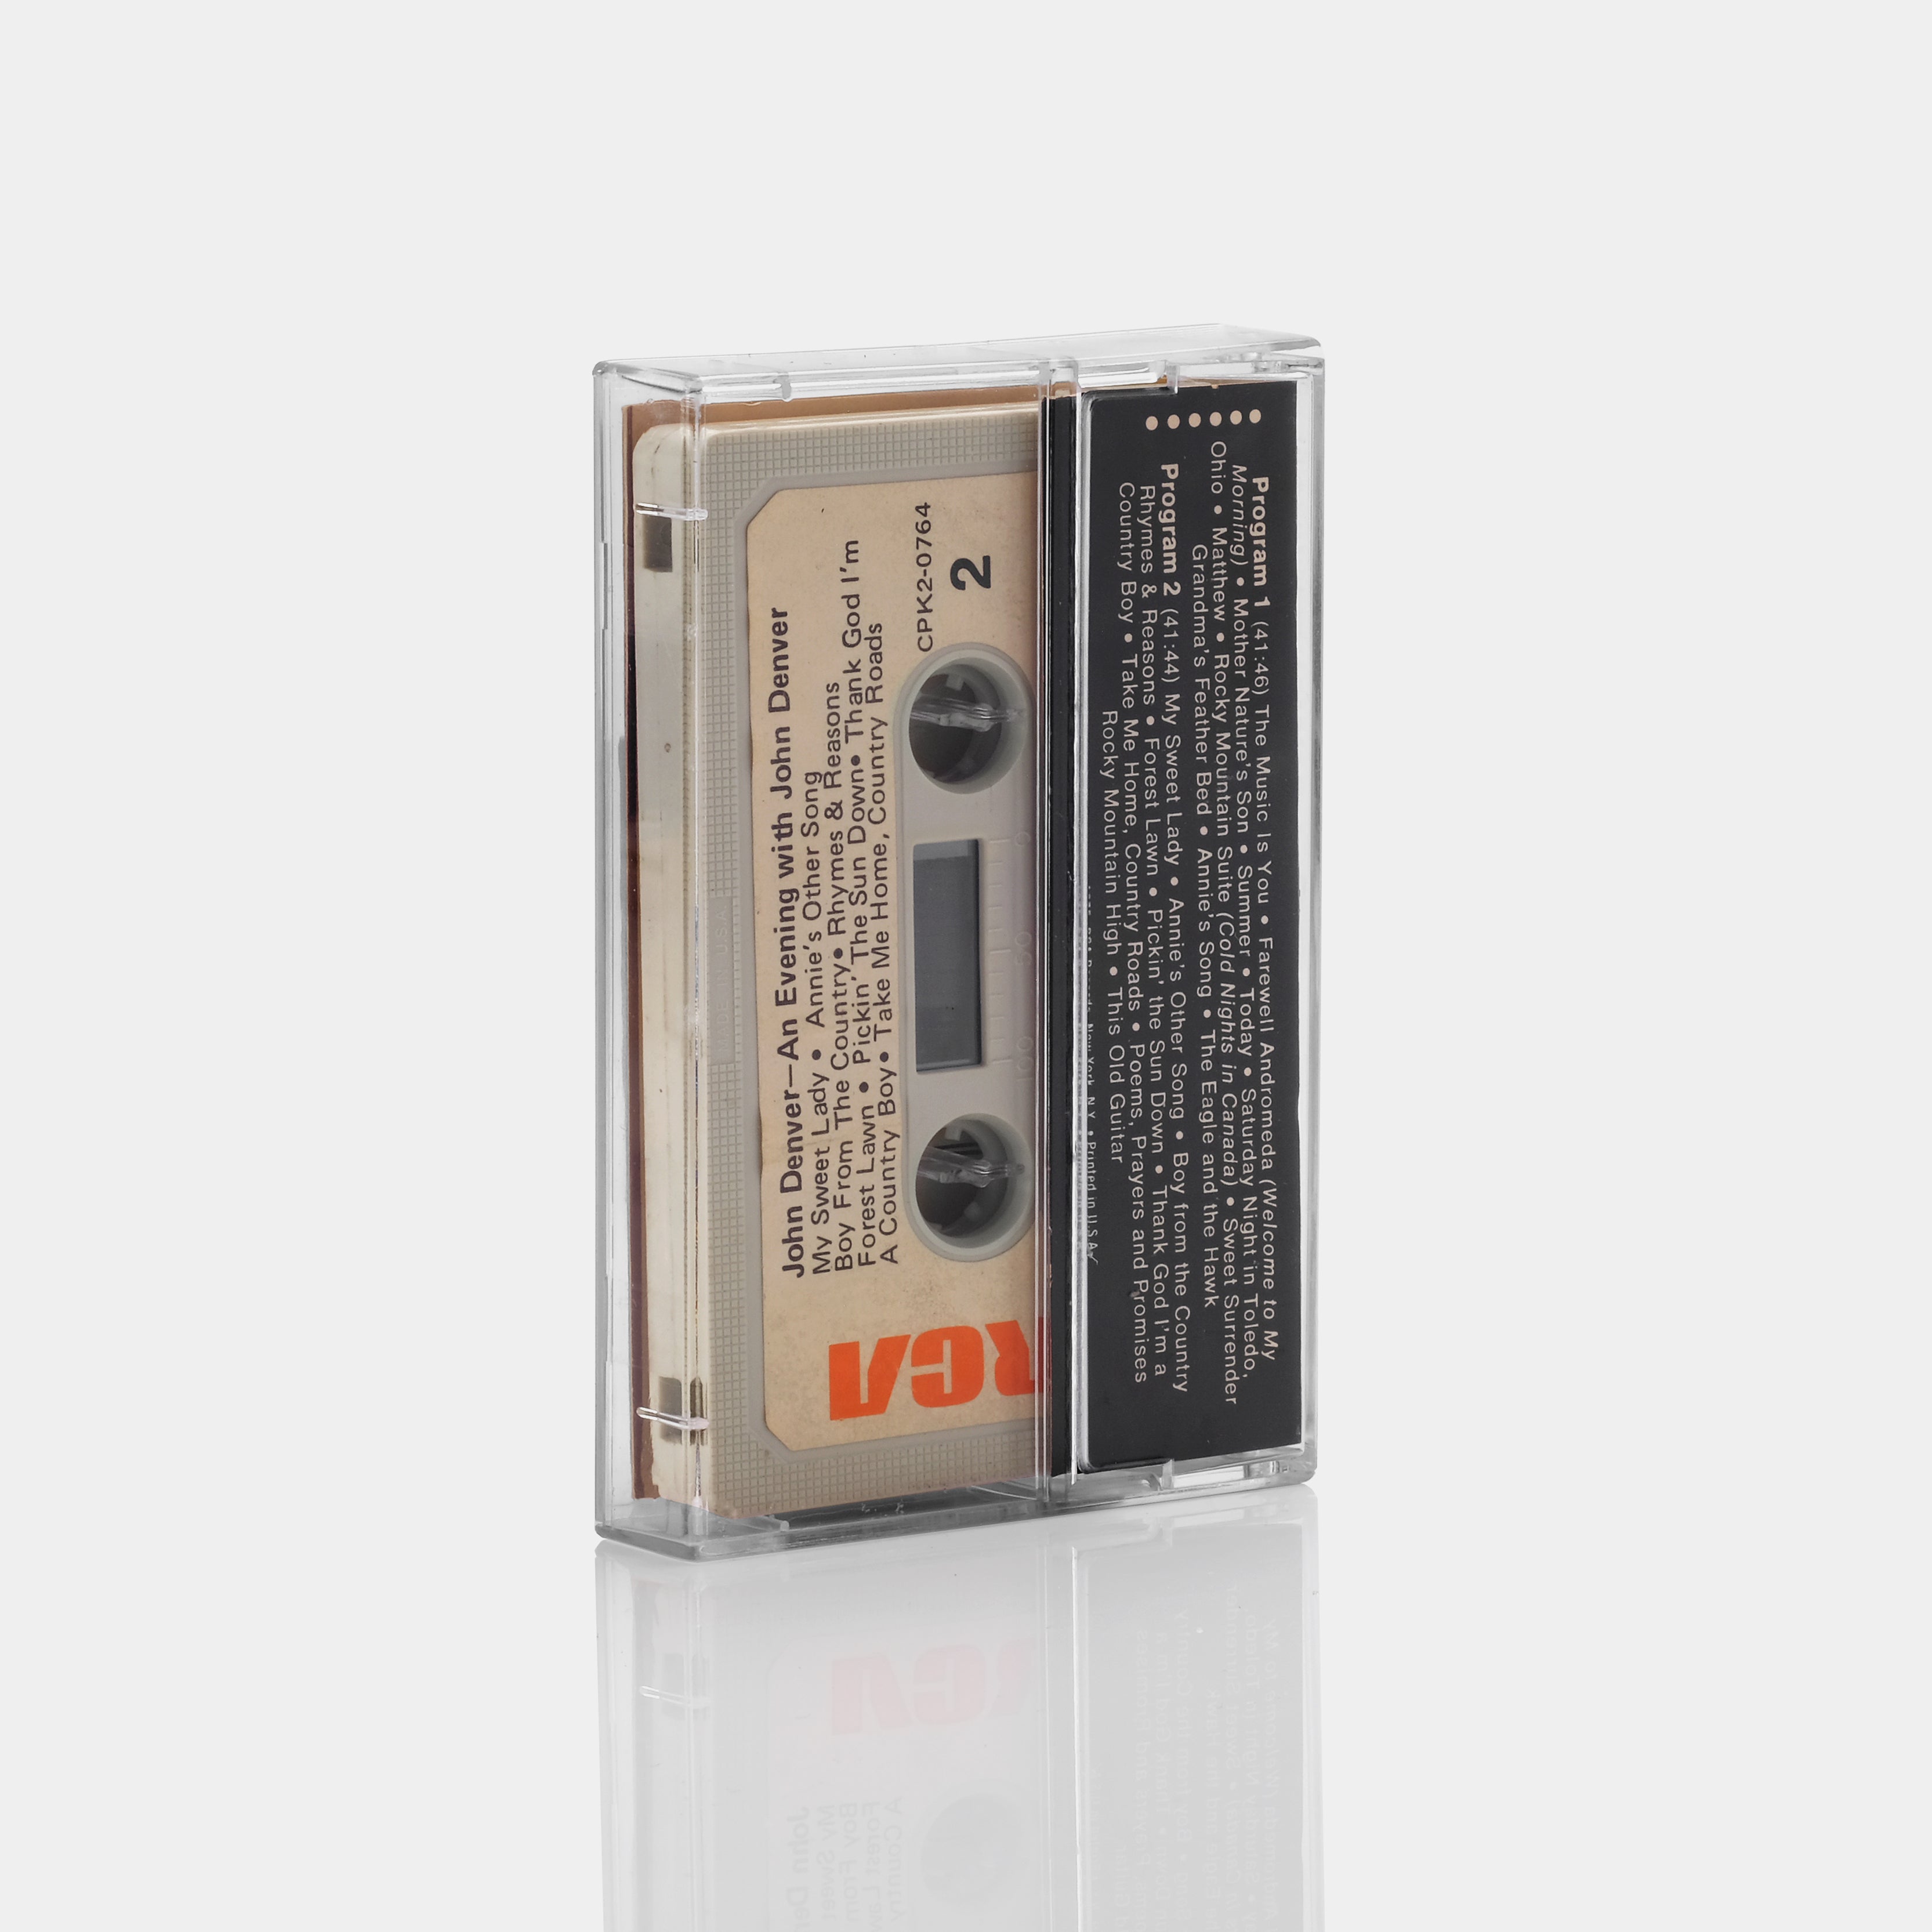 An Evening With John Denver Cassette Tape